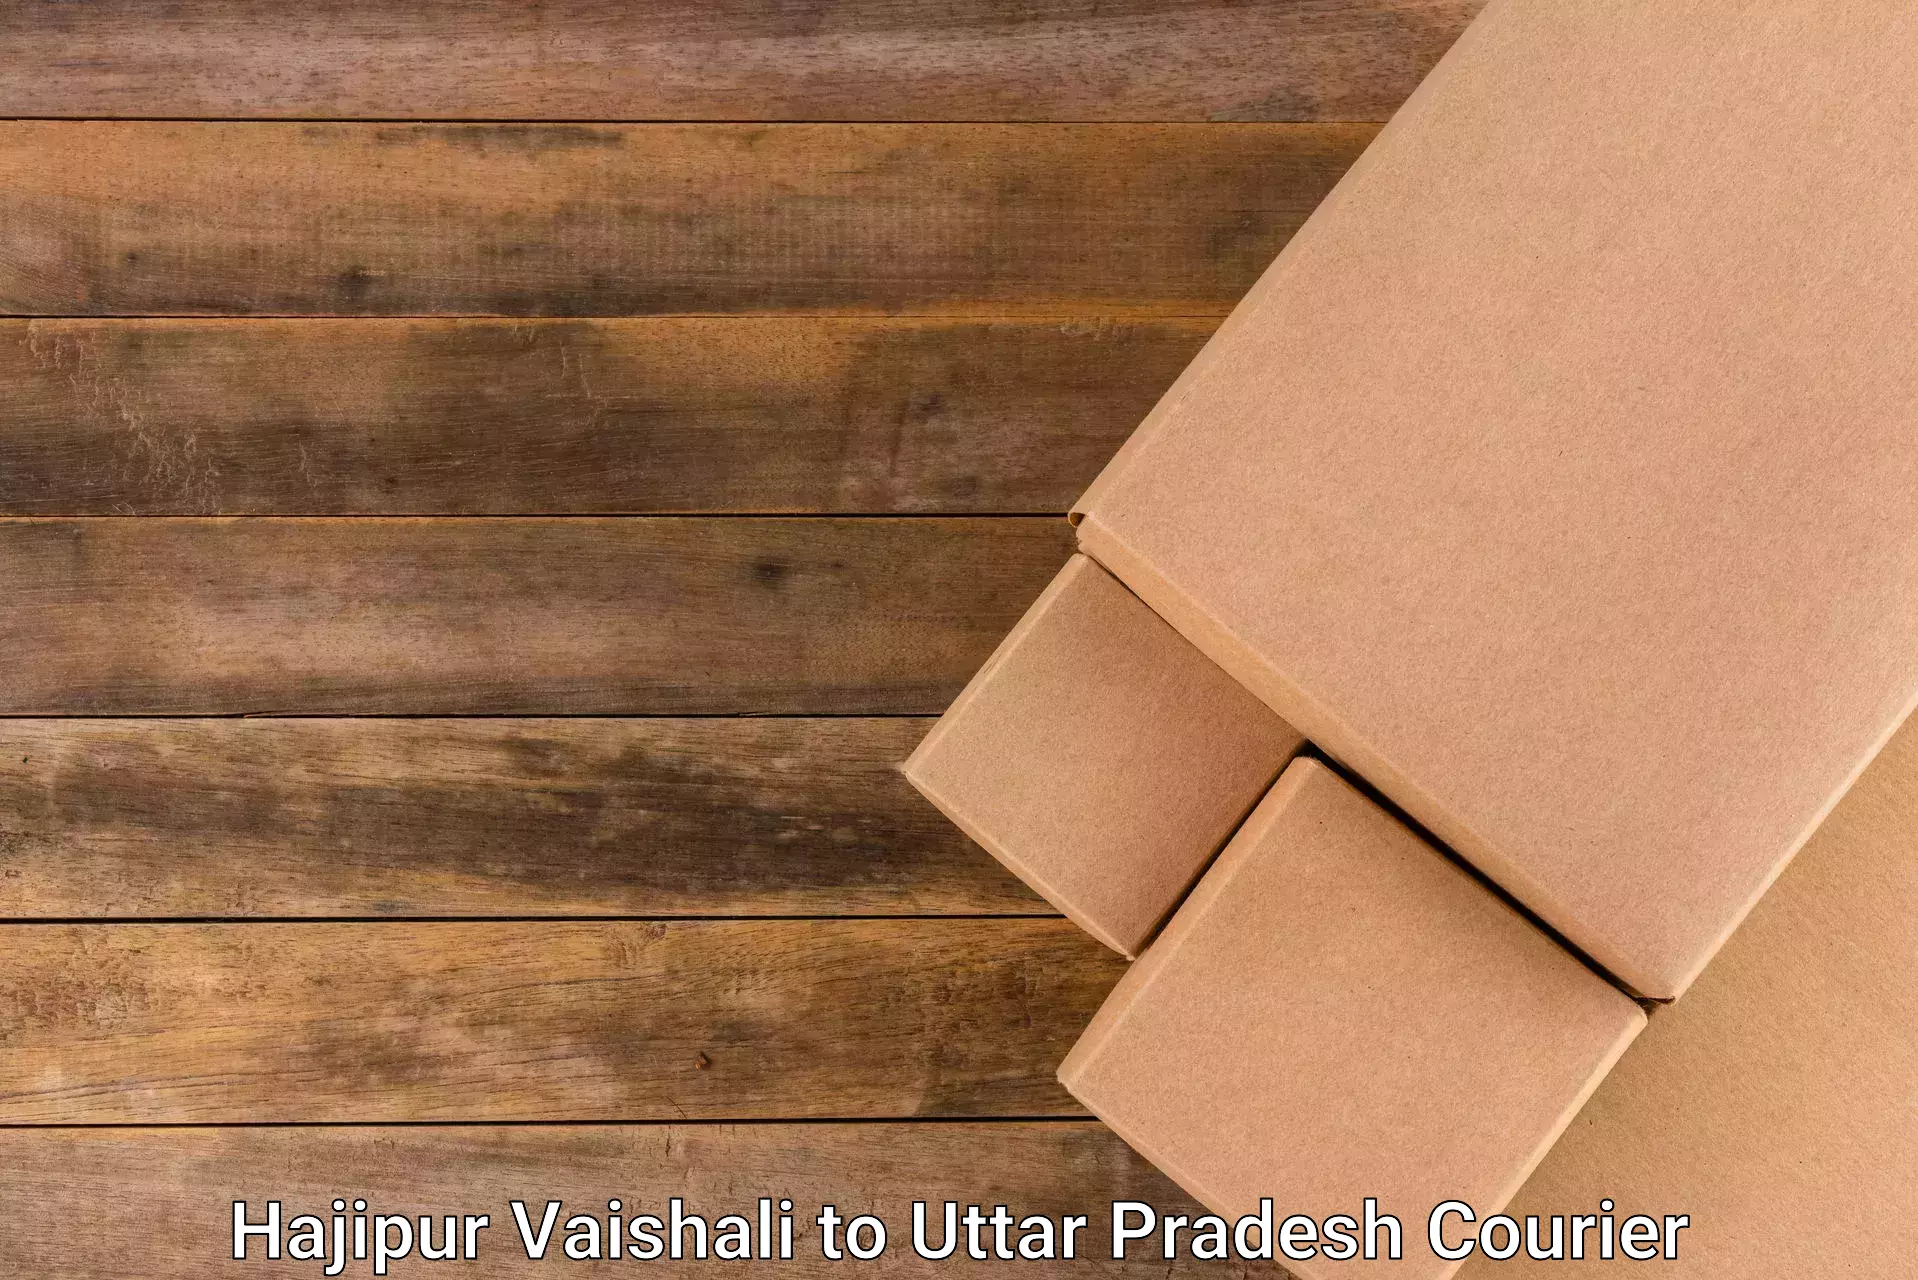 Cargo delivery service Hajipur Vaishali to Banda